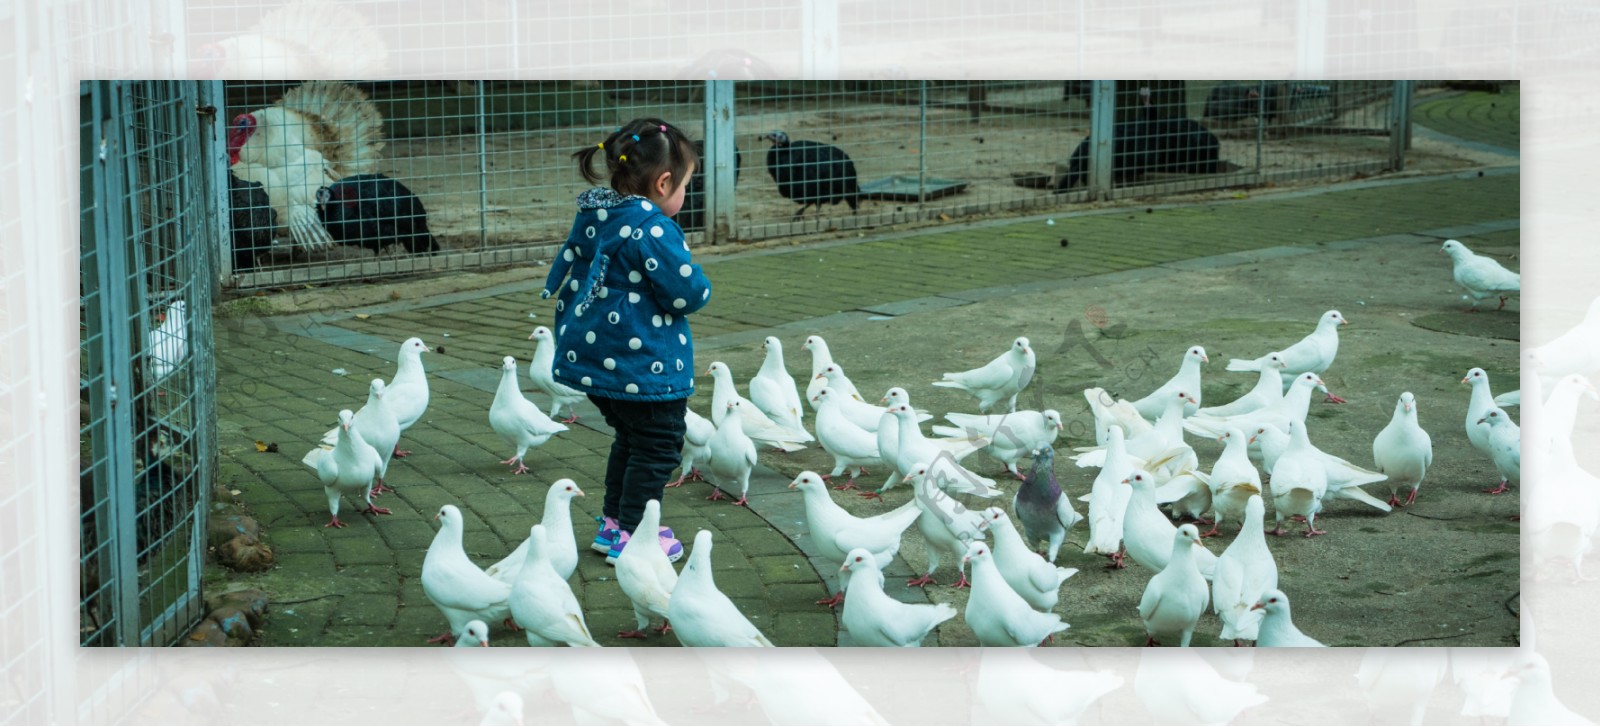 小女孩与一群鸽子